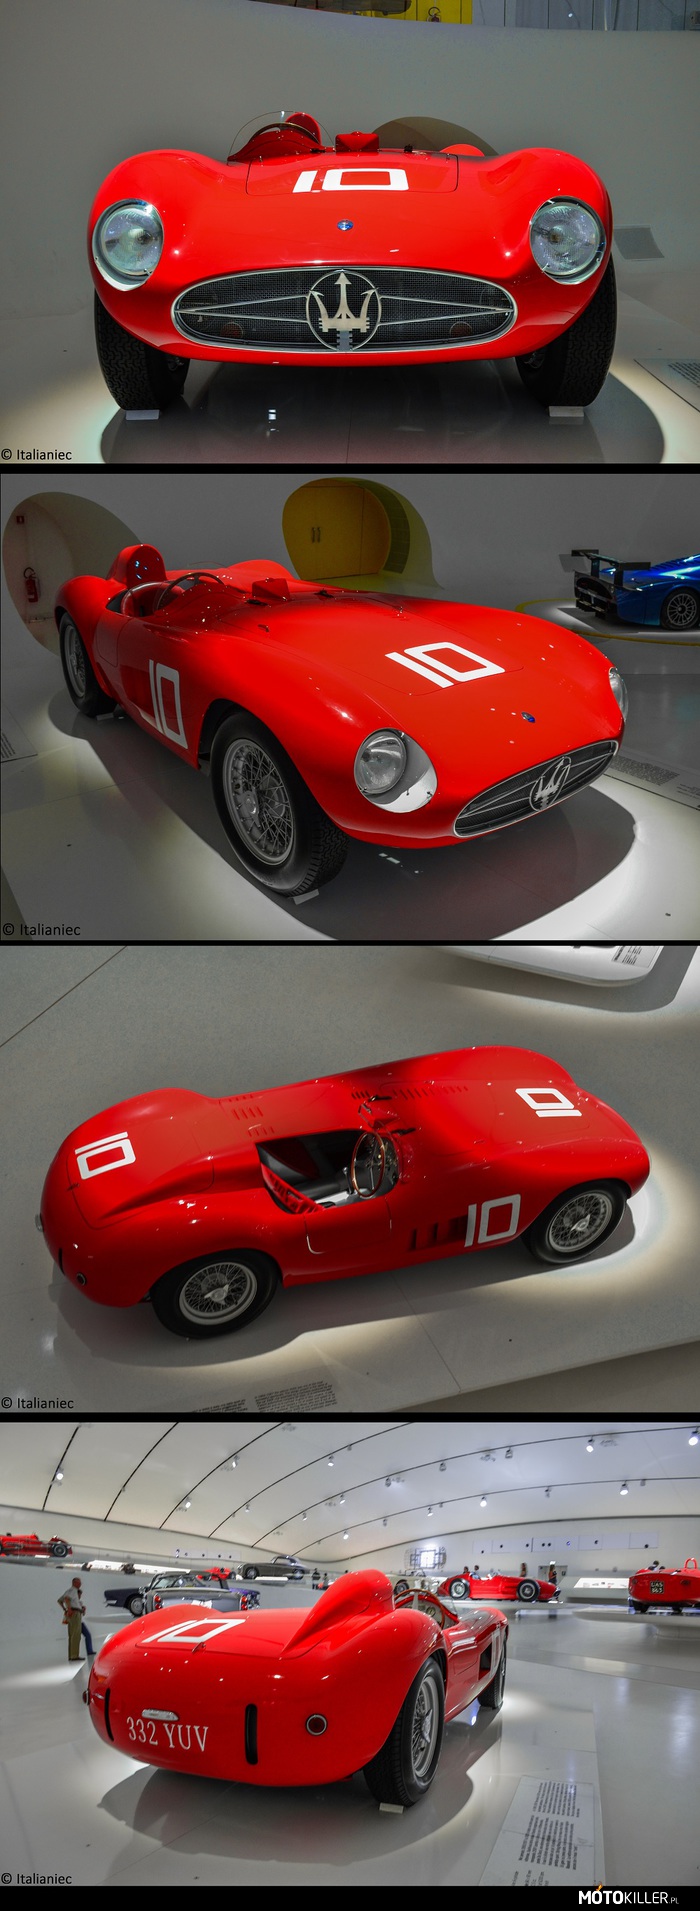 1955 Maserati 300S – Pierwszy samochód wyścigowy o dużej pojemności,  mowa o 3 l rzędowej szóstce, pochodzący  z bolidu 250F. Wzrost mocy nie jest za duży (245KM z poprzednich 240), ale dzięki temu jednostka była bardziej żywotna. Egzemplarz na zdjęciach pochodzi z 1955 roku. Rok, w który nie był najlepszy dla tego modelu: przez problemy mechaniczne odniósł zwycięztwo tylko w GP Wenezueli, z Juan Manuel Fangio za kierownicą. Za to rok później 300S został wicemistrzem świata. W 1957 roku, po wypadku na Mille MIglia (który położył kres wyscigom drogowym w Europie) pozostałe 300S zostały sprzedane do USA, gdzie odnosił kolenje sukcesy. 